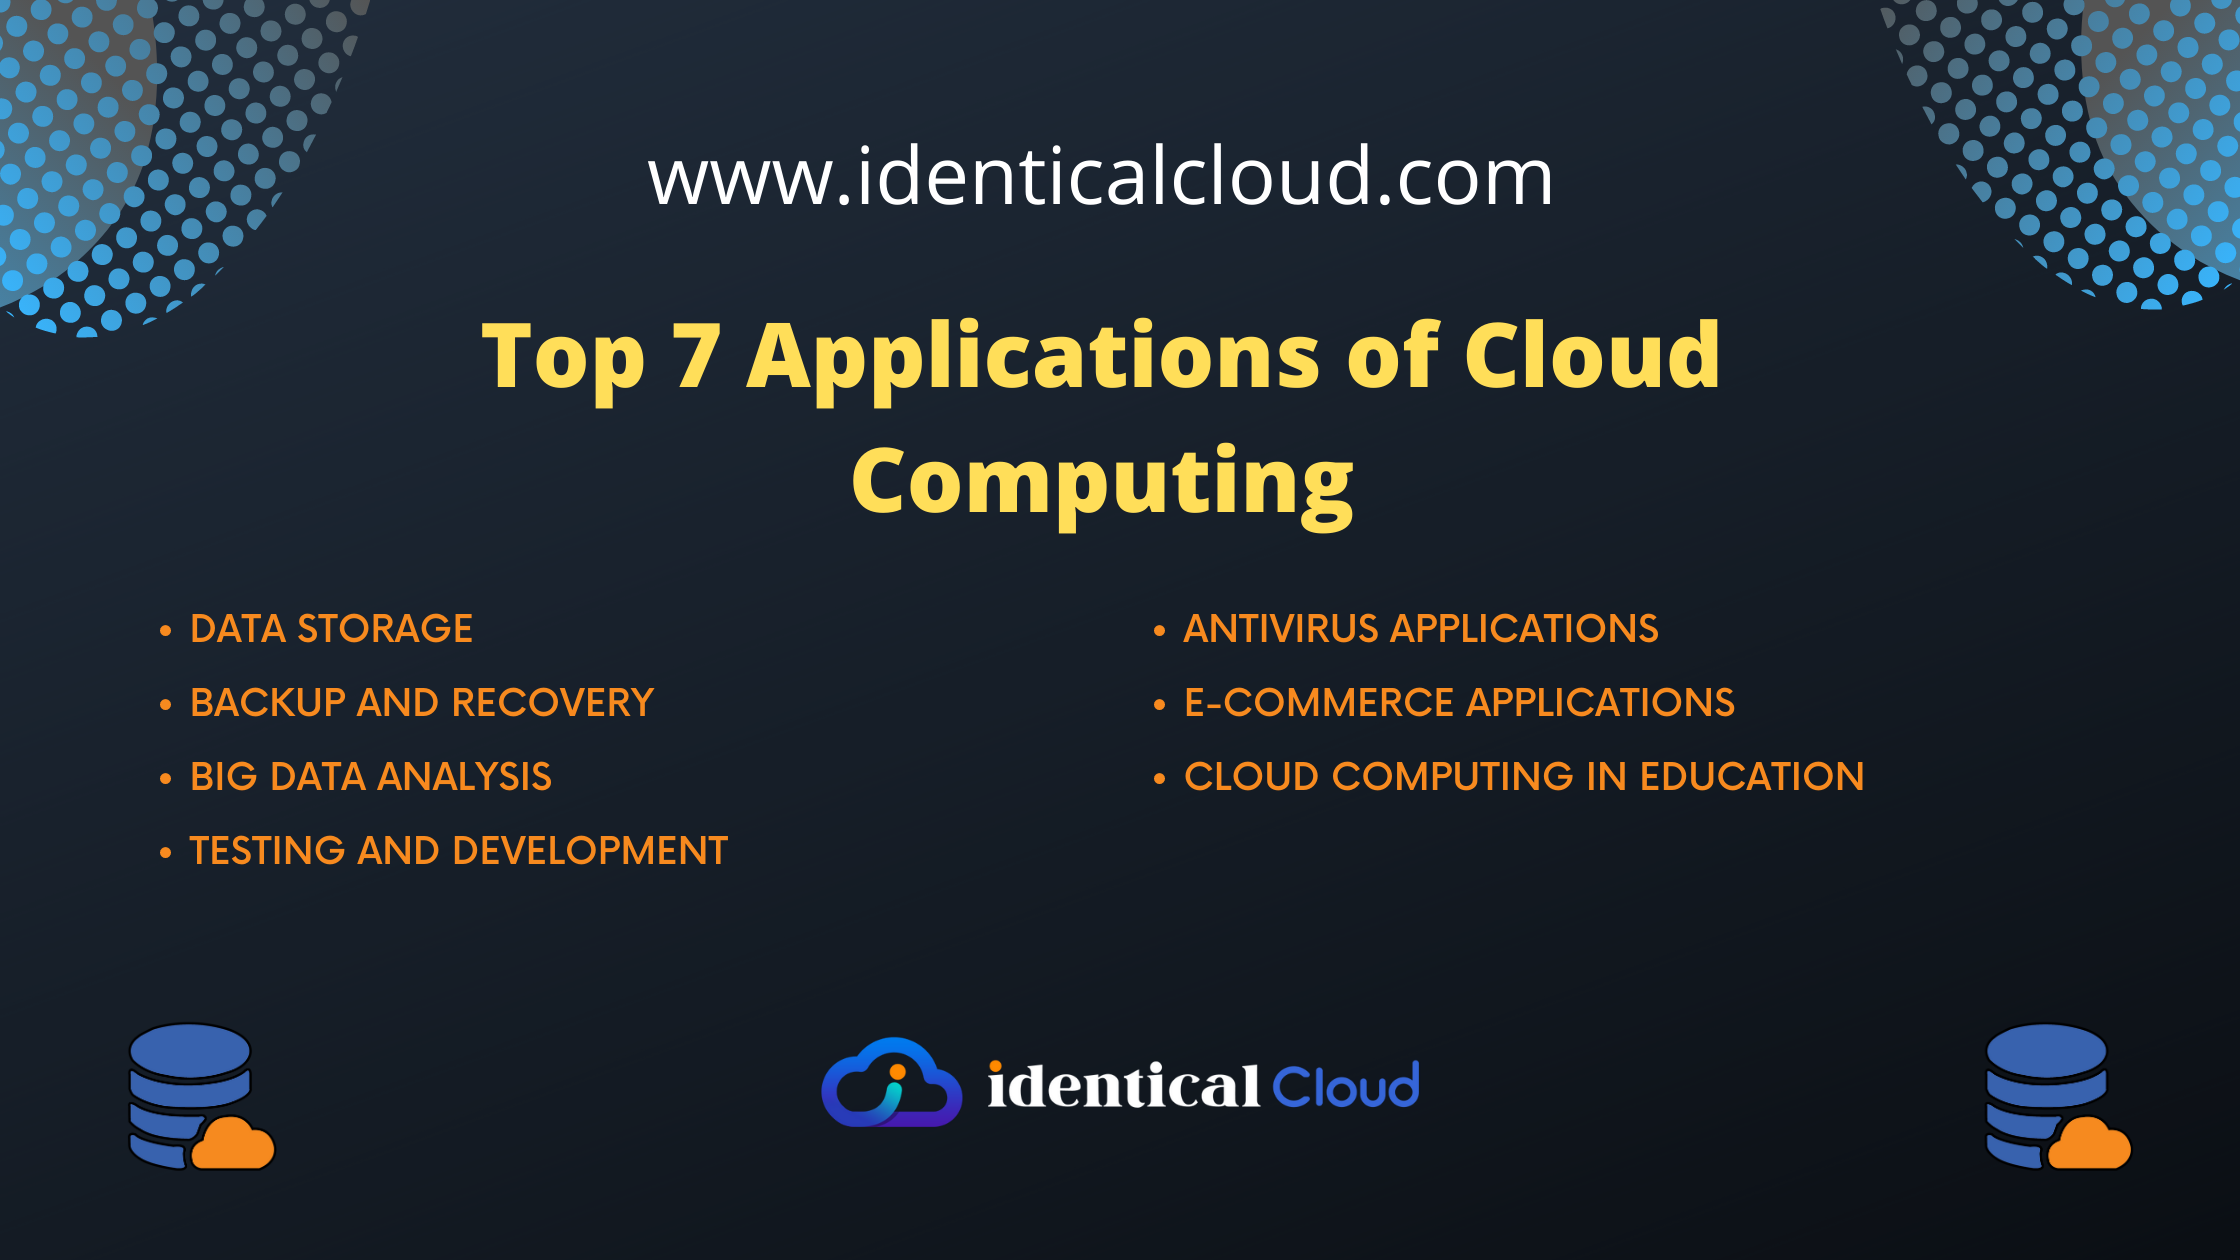 Top 7 Applications of Cloud Computing - identicalcloud.com